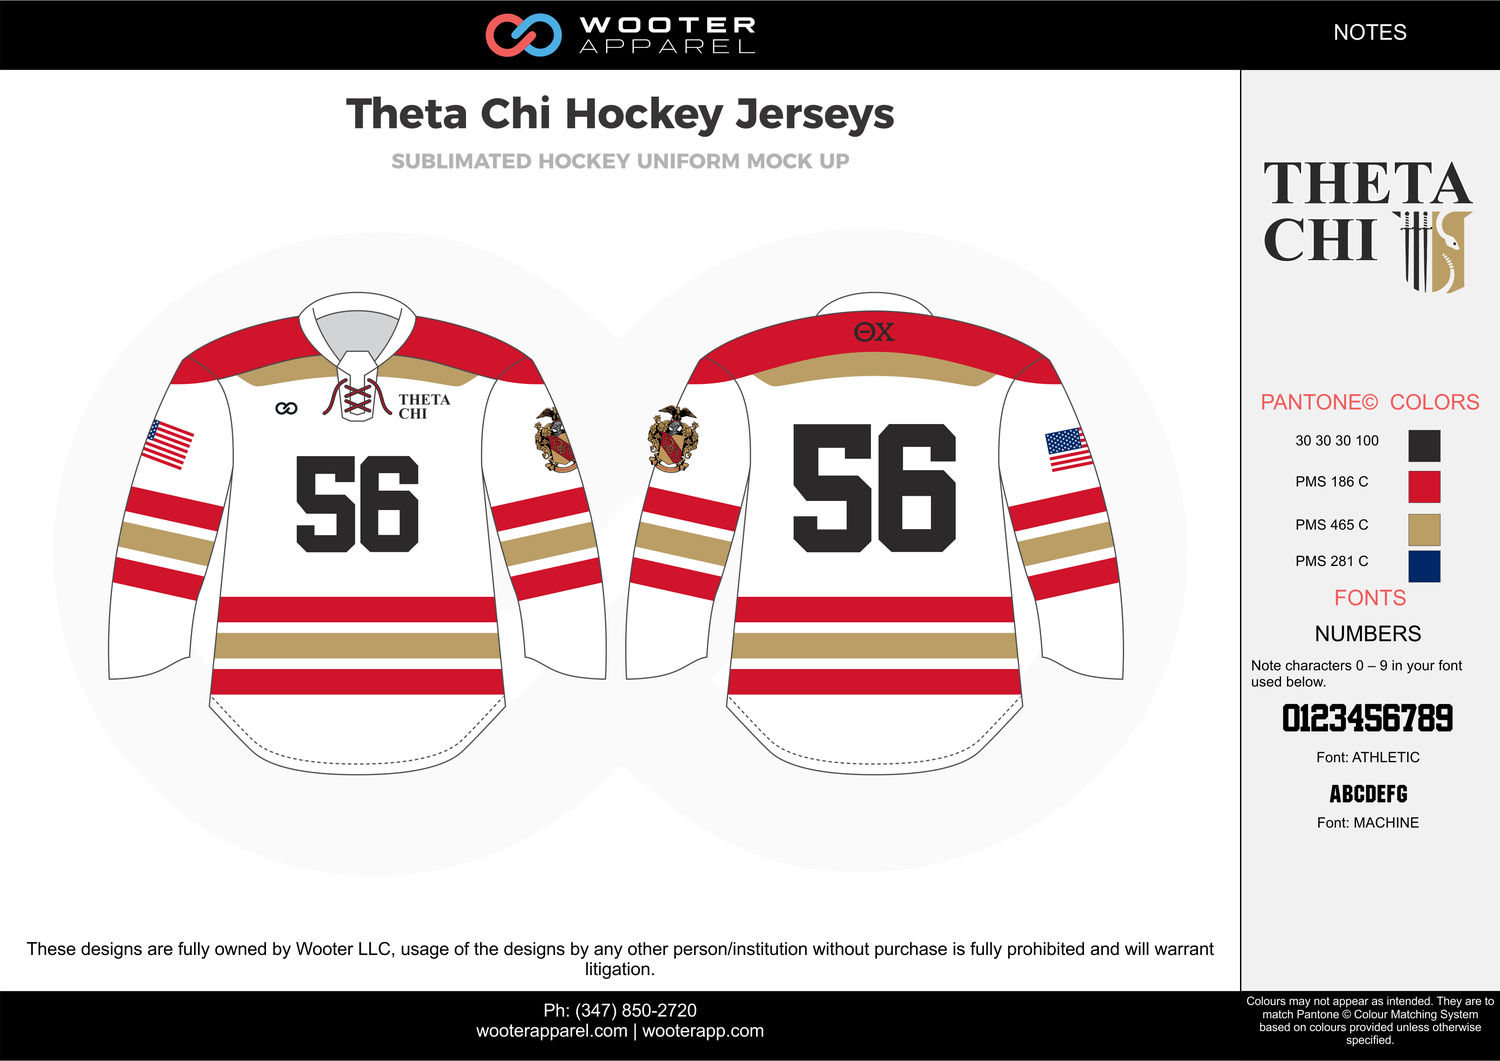 Red Black White Hockey Logo - Theta Chi Hockey Jerseys white red black blue gold hockey uniforms